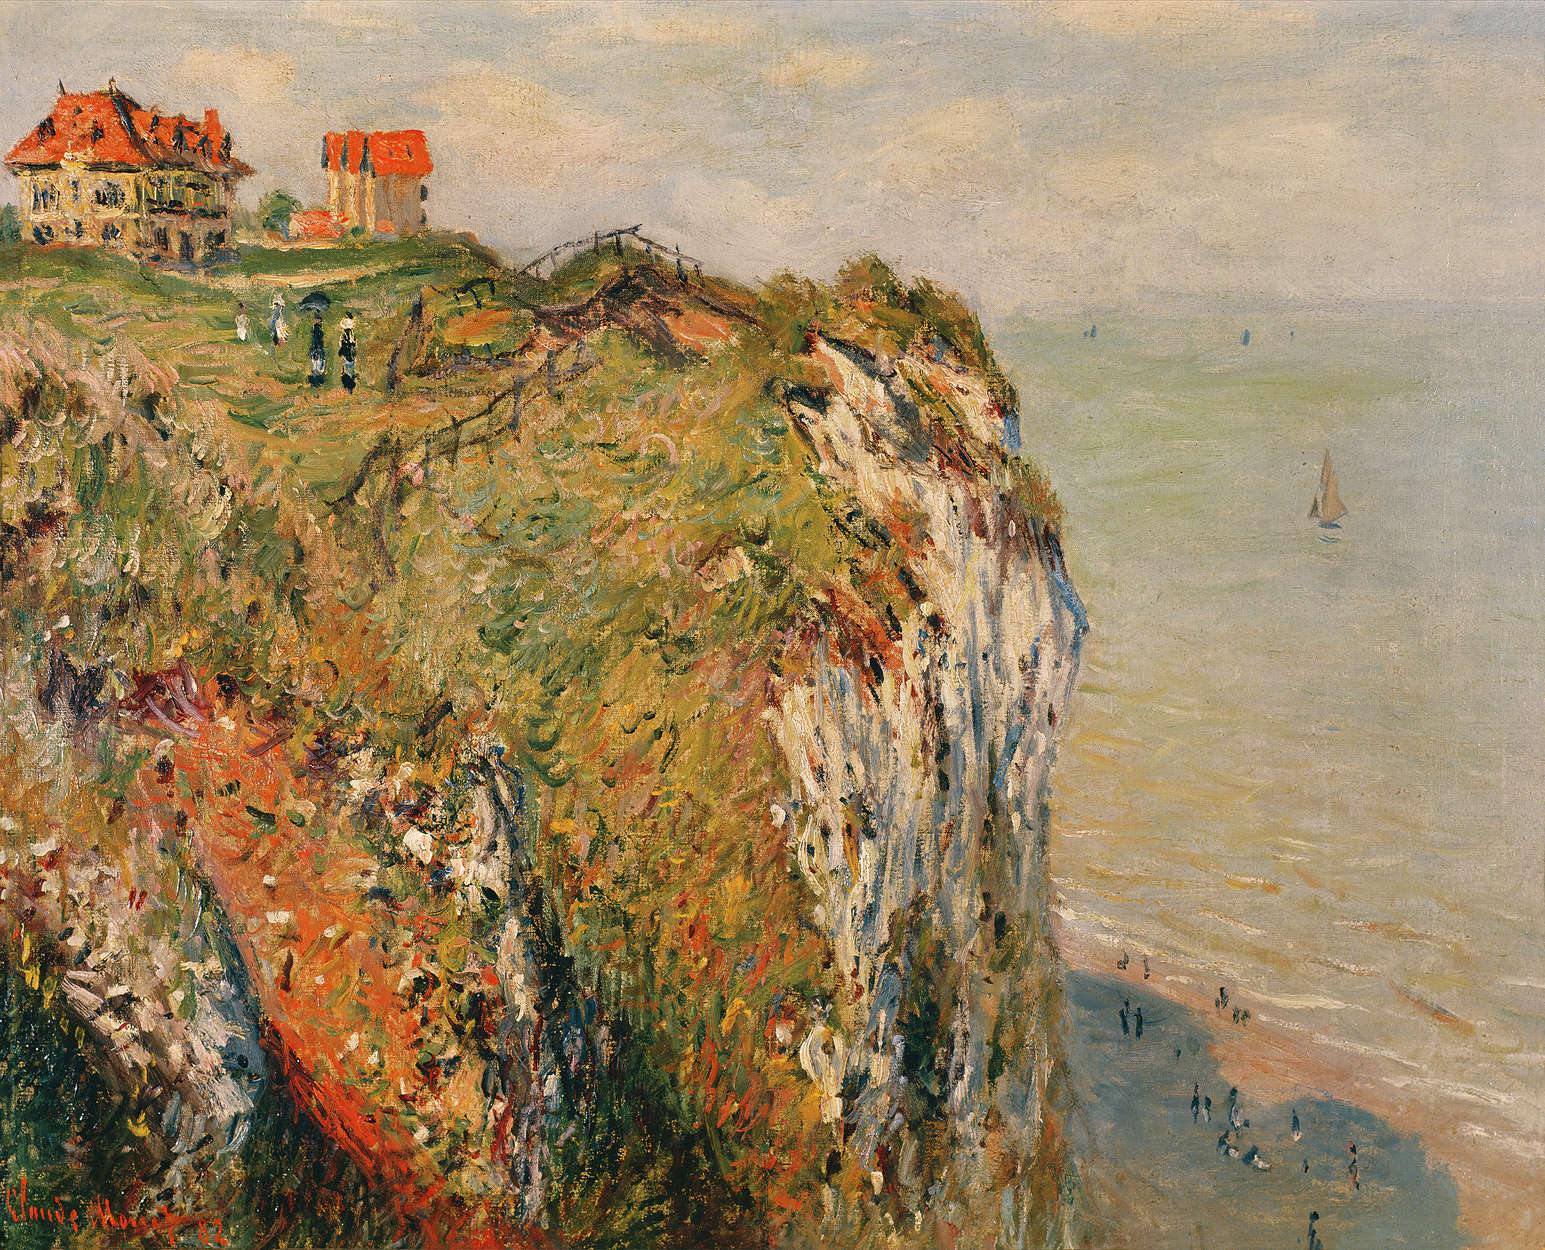             Papier peint panoramique "Falaise près de Dieppe" de Claude Monet
        